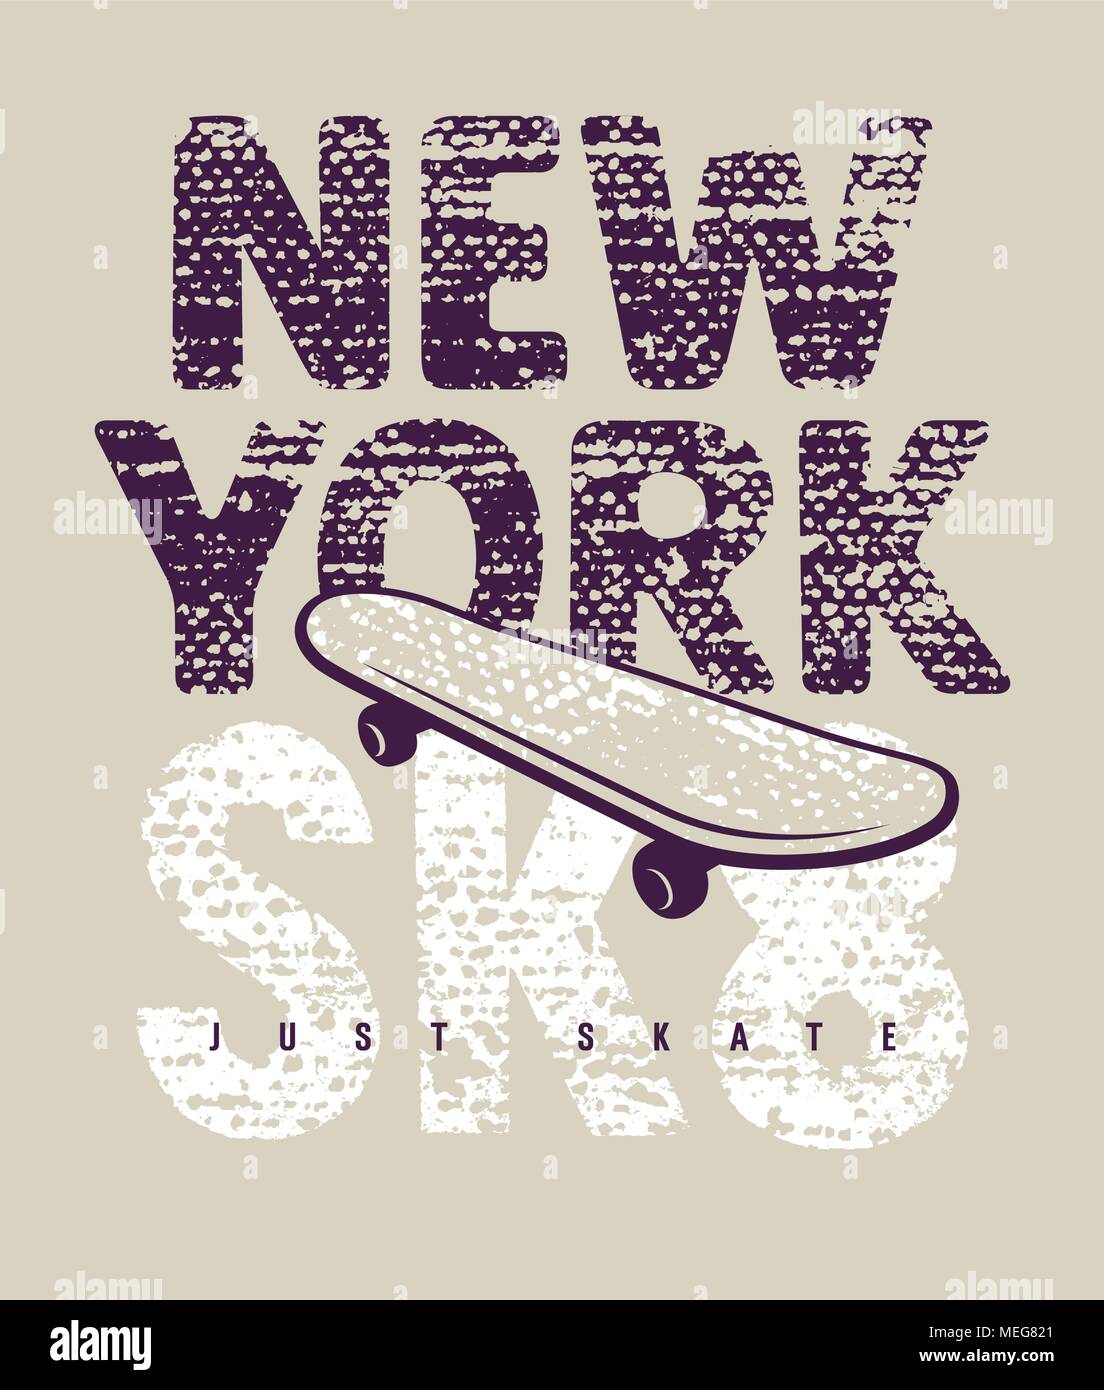 Skateboard la typographie. Tee graphiques. New York le skate t-shirt Illustration de Vecteur